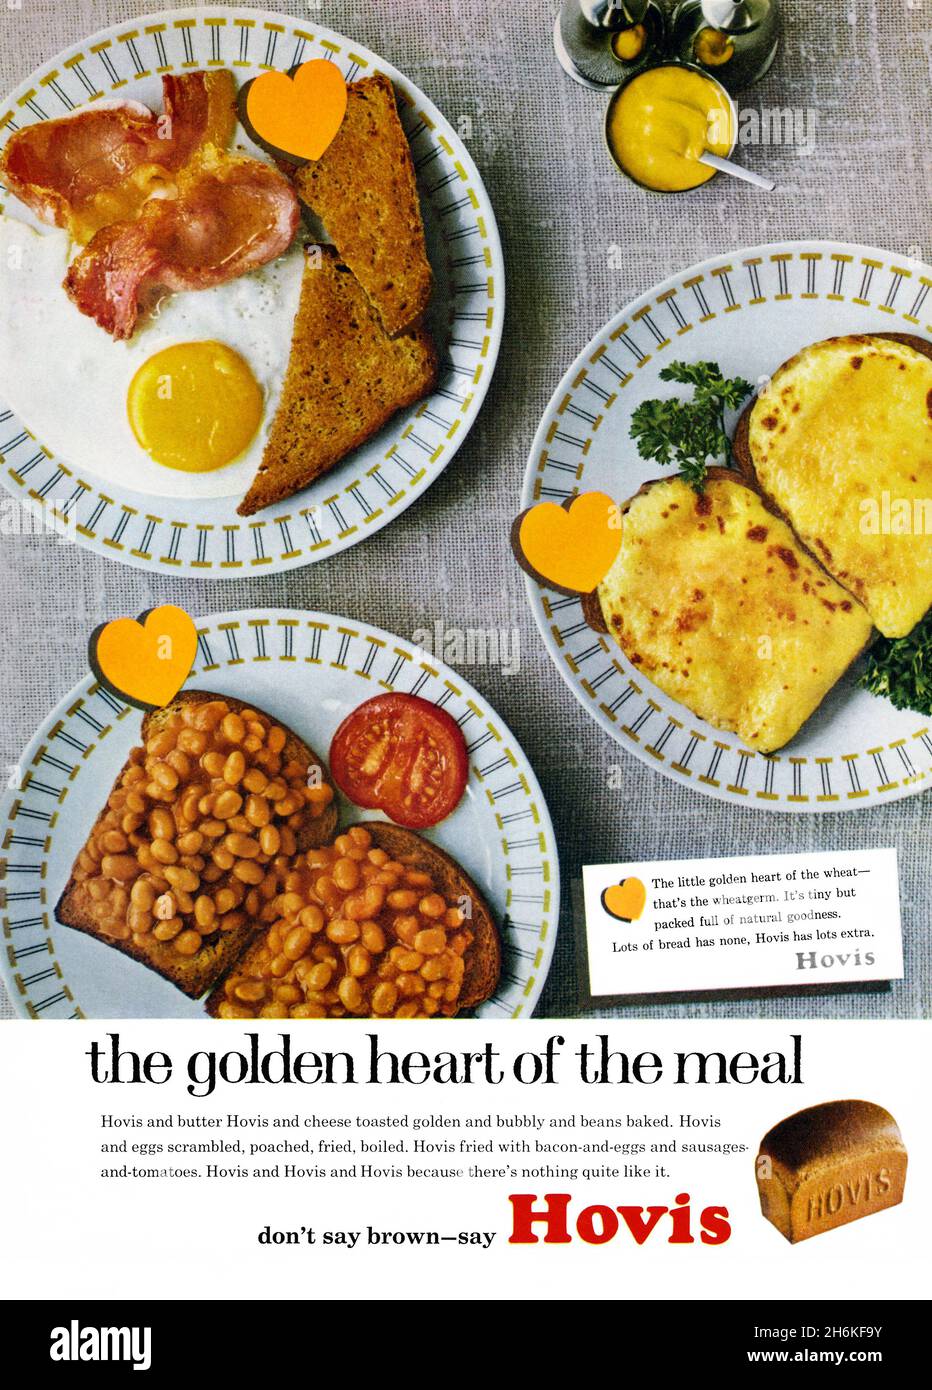 Une publicité des années 1960 pour Hovis Bread.La publicité est apparue dans un magazine publié au Royaume-Uni en mars 1965.La photo montre quelques assiettes de plats de petit déjeuner – des haricots sur le pain grillé, un friture et du fromage fondu sur le pain grillé.Les «coeurs» en or graphique indiquent que Hovis est «le coeur doré du repas».À la base se trouve le slogan populaire ‘Don’t say Brown – Say Hovis’.Hovis Ltd est une entreprise britannique qui produit de la farine et du pain.La marque a été créée à Stoke-on-Trent et a été la première fois produite en masse à Macclesfield, Cheshire, en 1886 – des graphiques vintage des années 1960 à usage éditorial. Banque D'Images